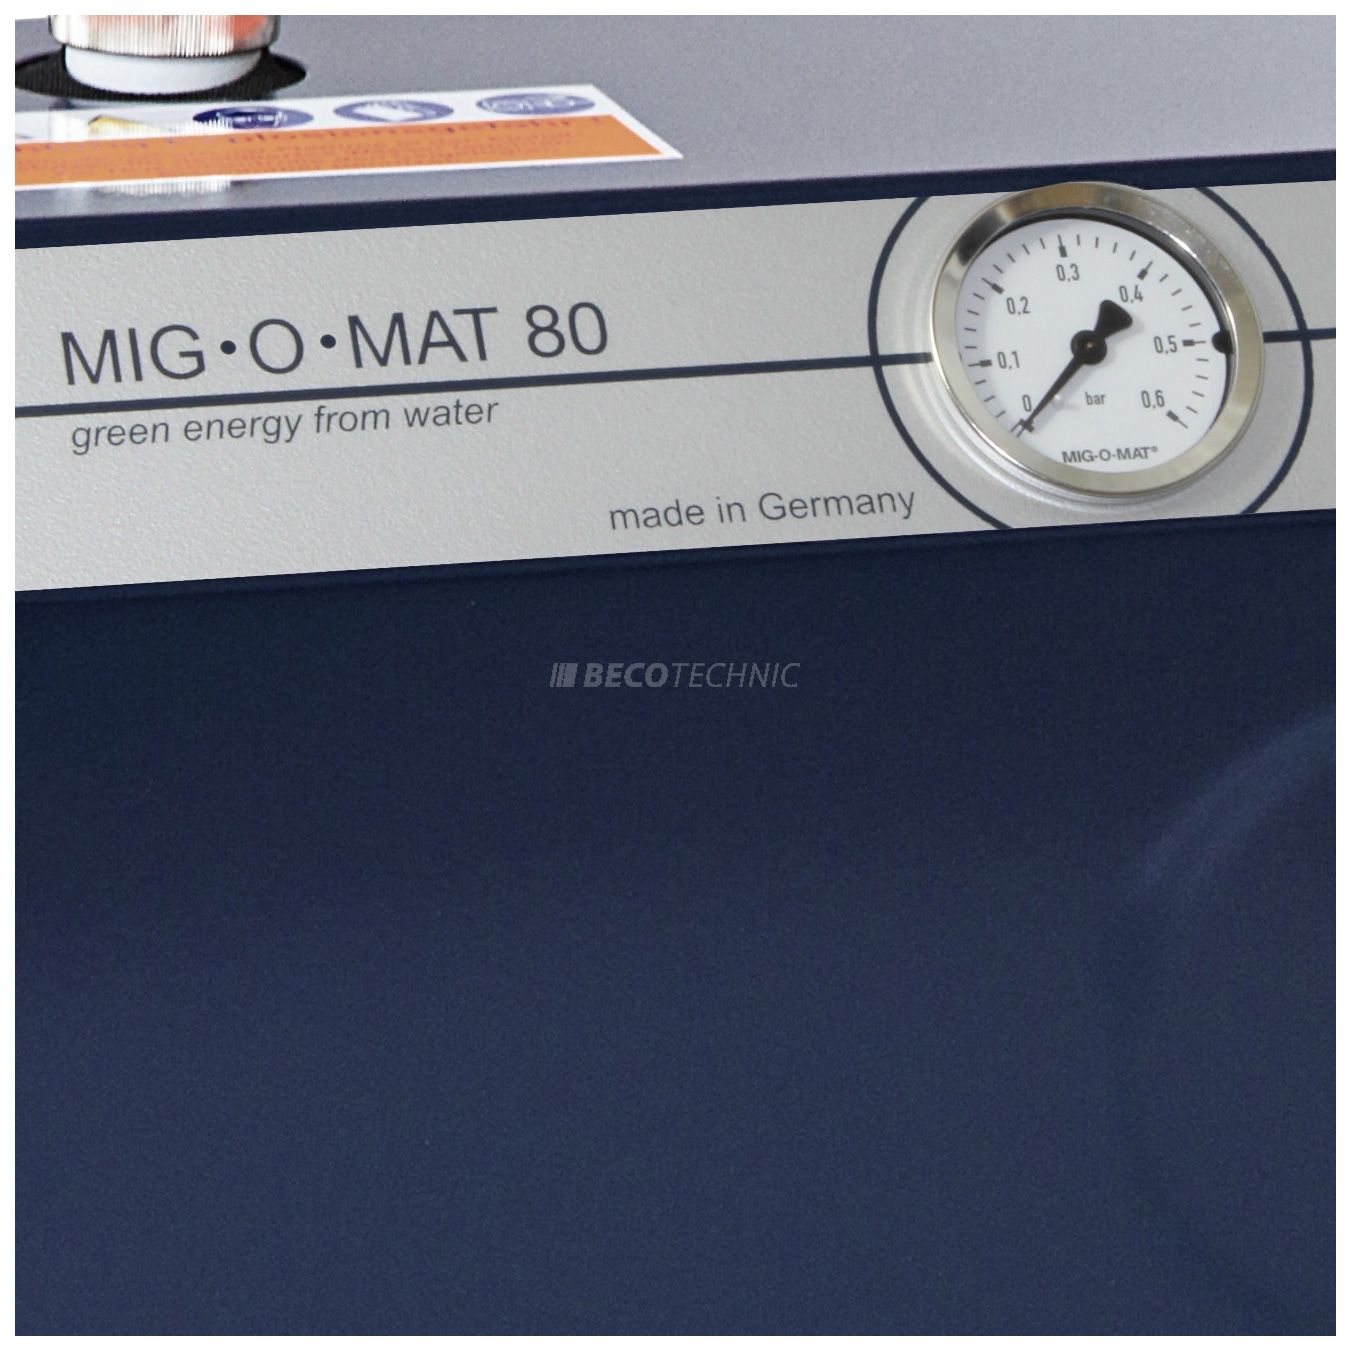 Mig-O-Mat Lötstar 80, Gaslötgerät mit 80l/h Gasproduktion